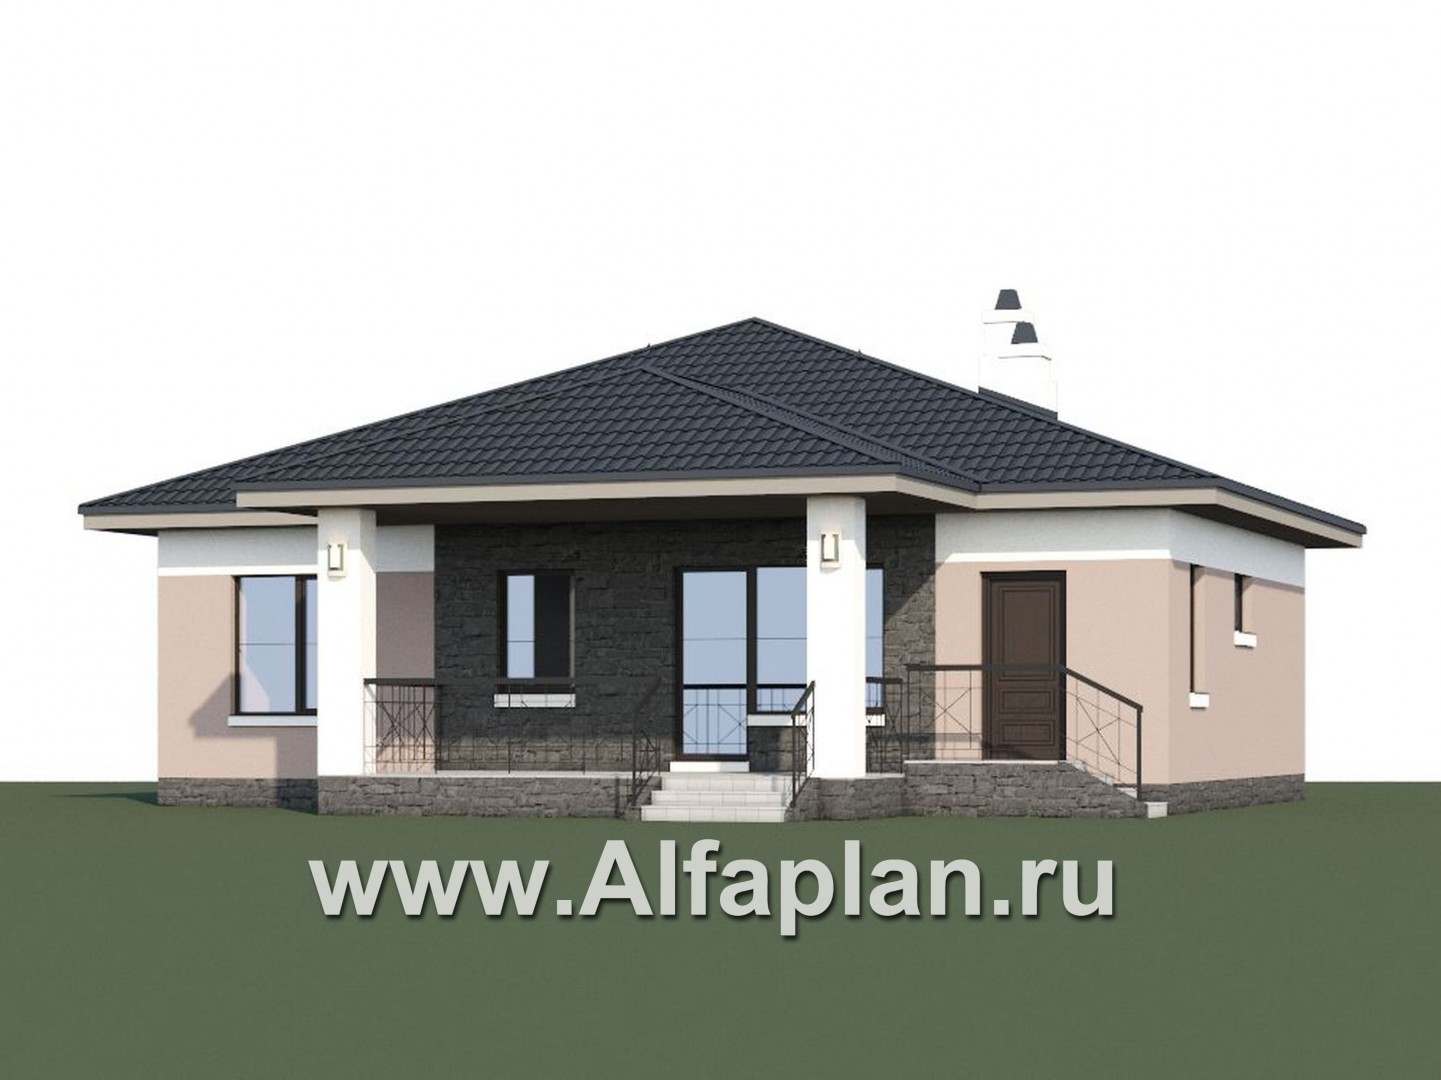 «Княженика» - проект одноэтажного дома, с террасой, планировка 2 спальни и сауна, для небольшой семьи - дизайн дома №1